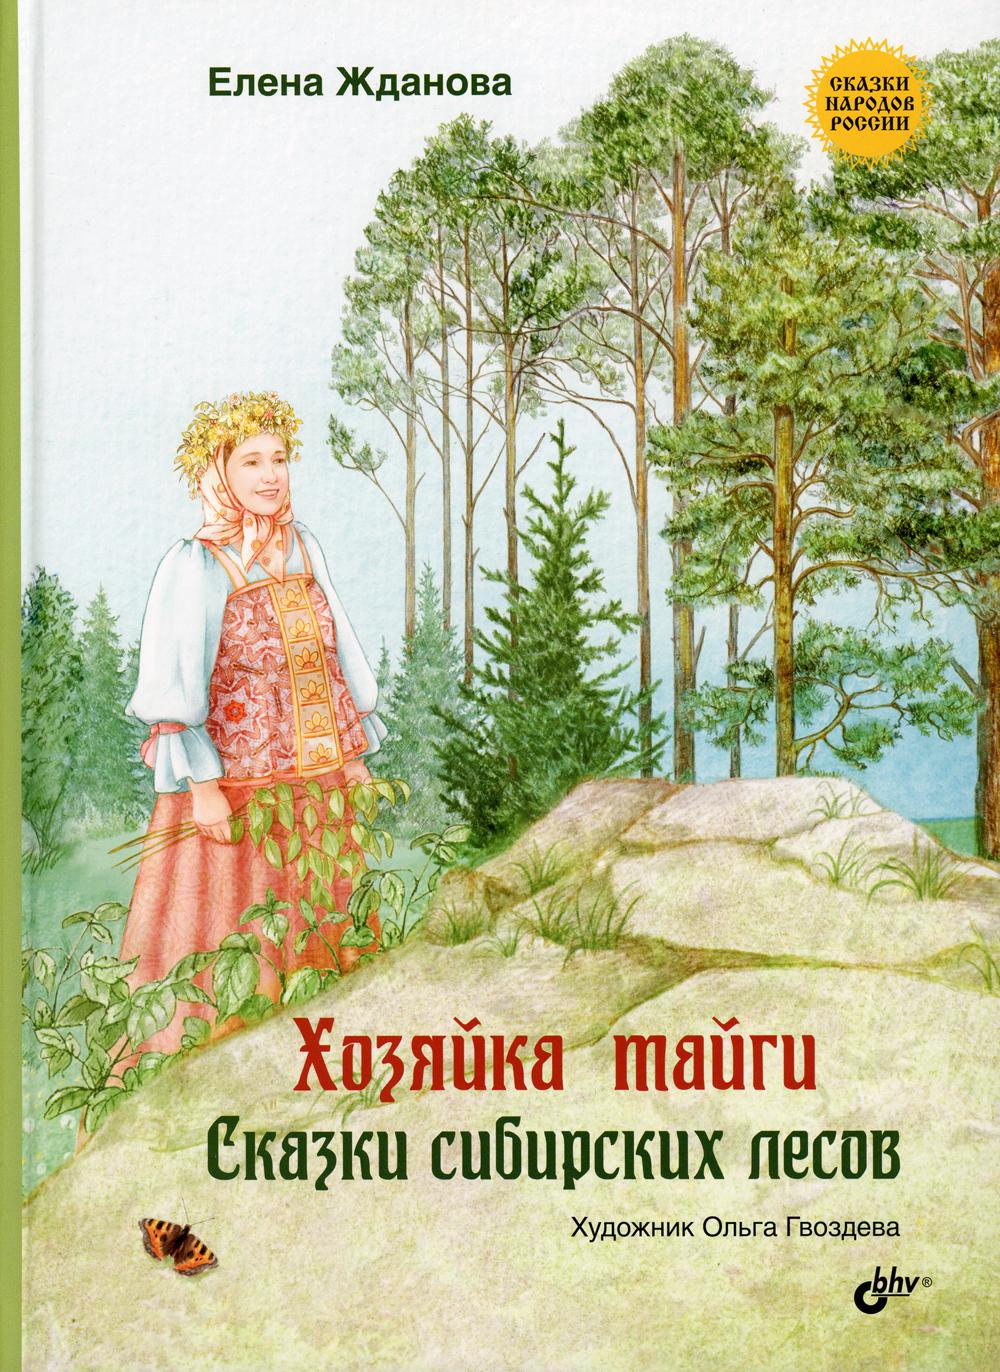 Хозяйка тайги. Сказки сибирских лесов